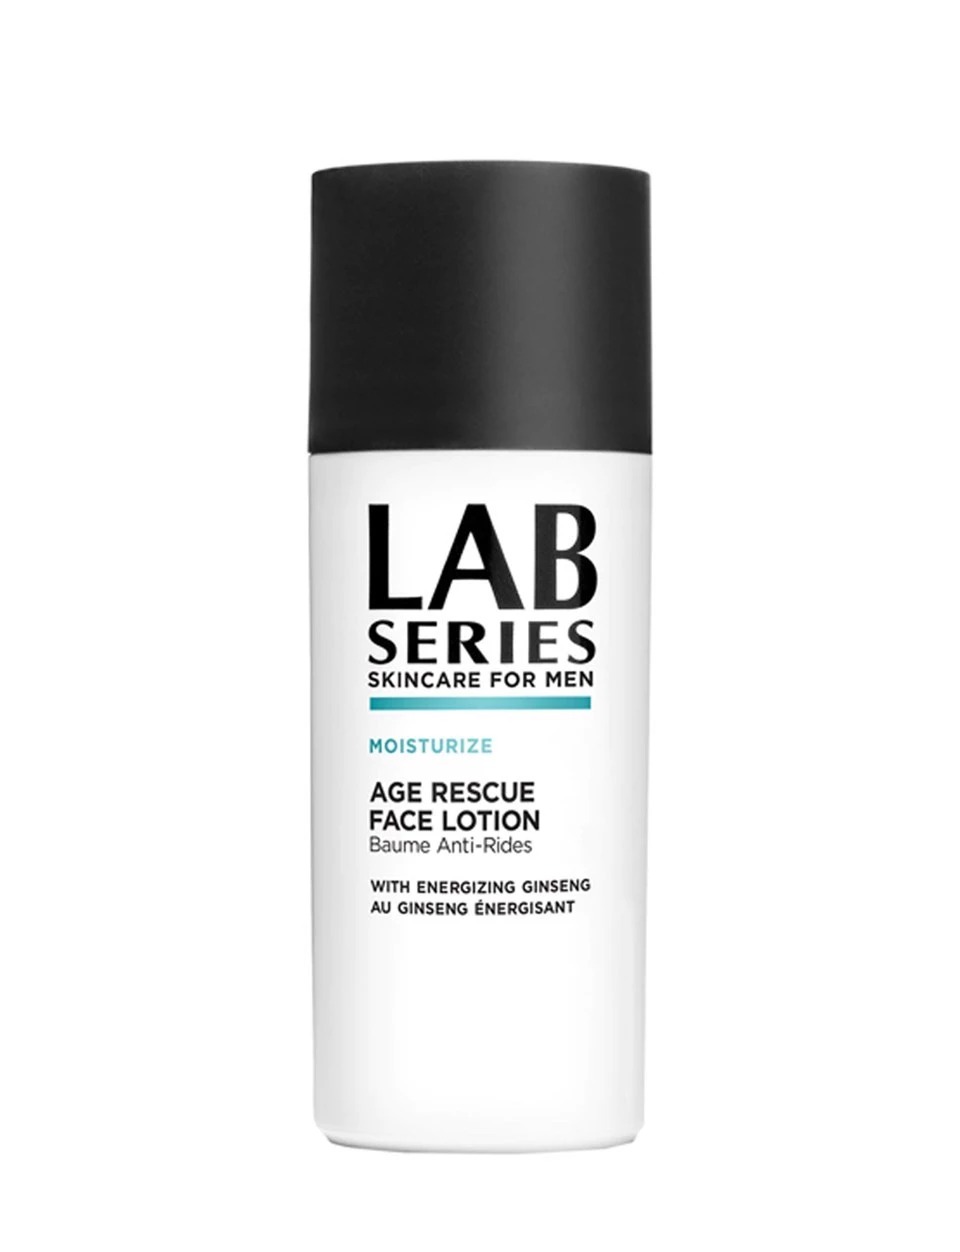 Lab age rescue face lotion moisturize 50 ml Erkekler İçin Nemlendirici